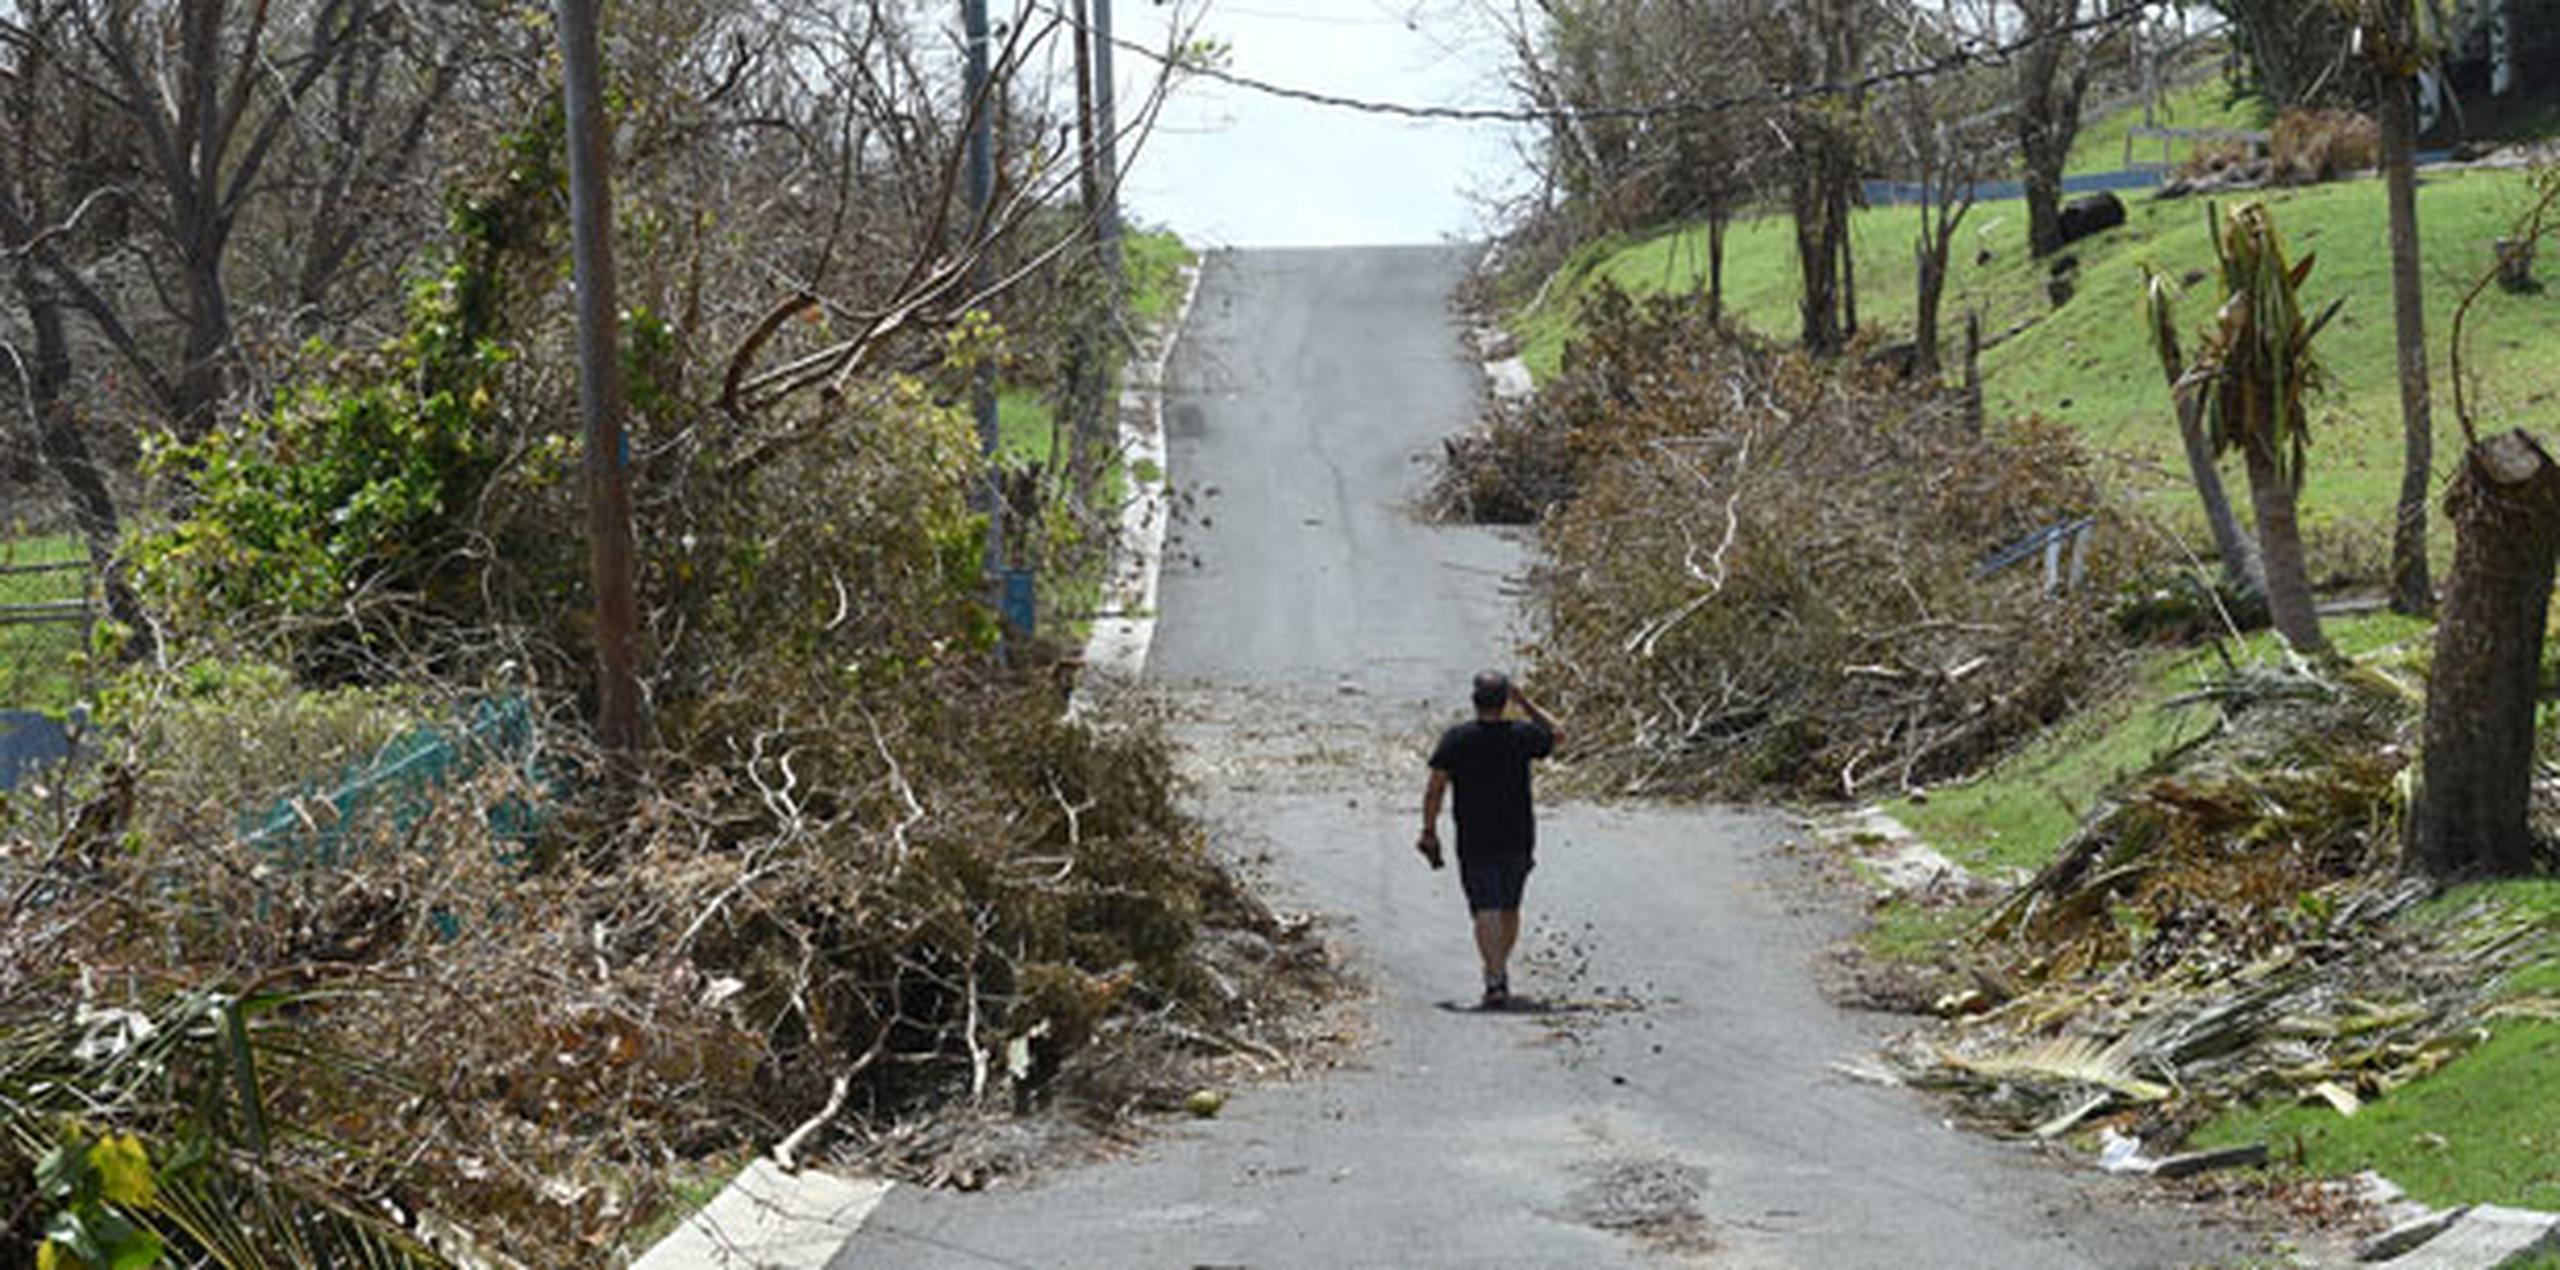 Los árboles arrancados de raíz y las amplias inundaciones bloquearon muchas autovías y calles en la isla, creando un laberinto.  (andre.kang@gfrmedia.com)
